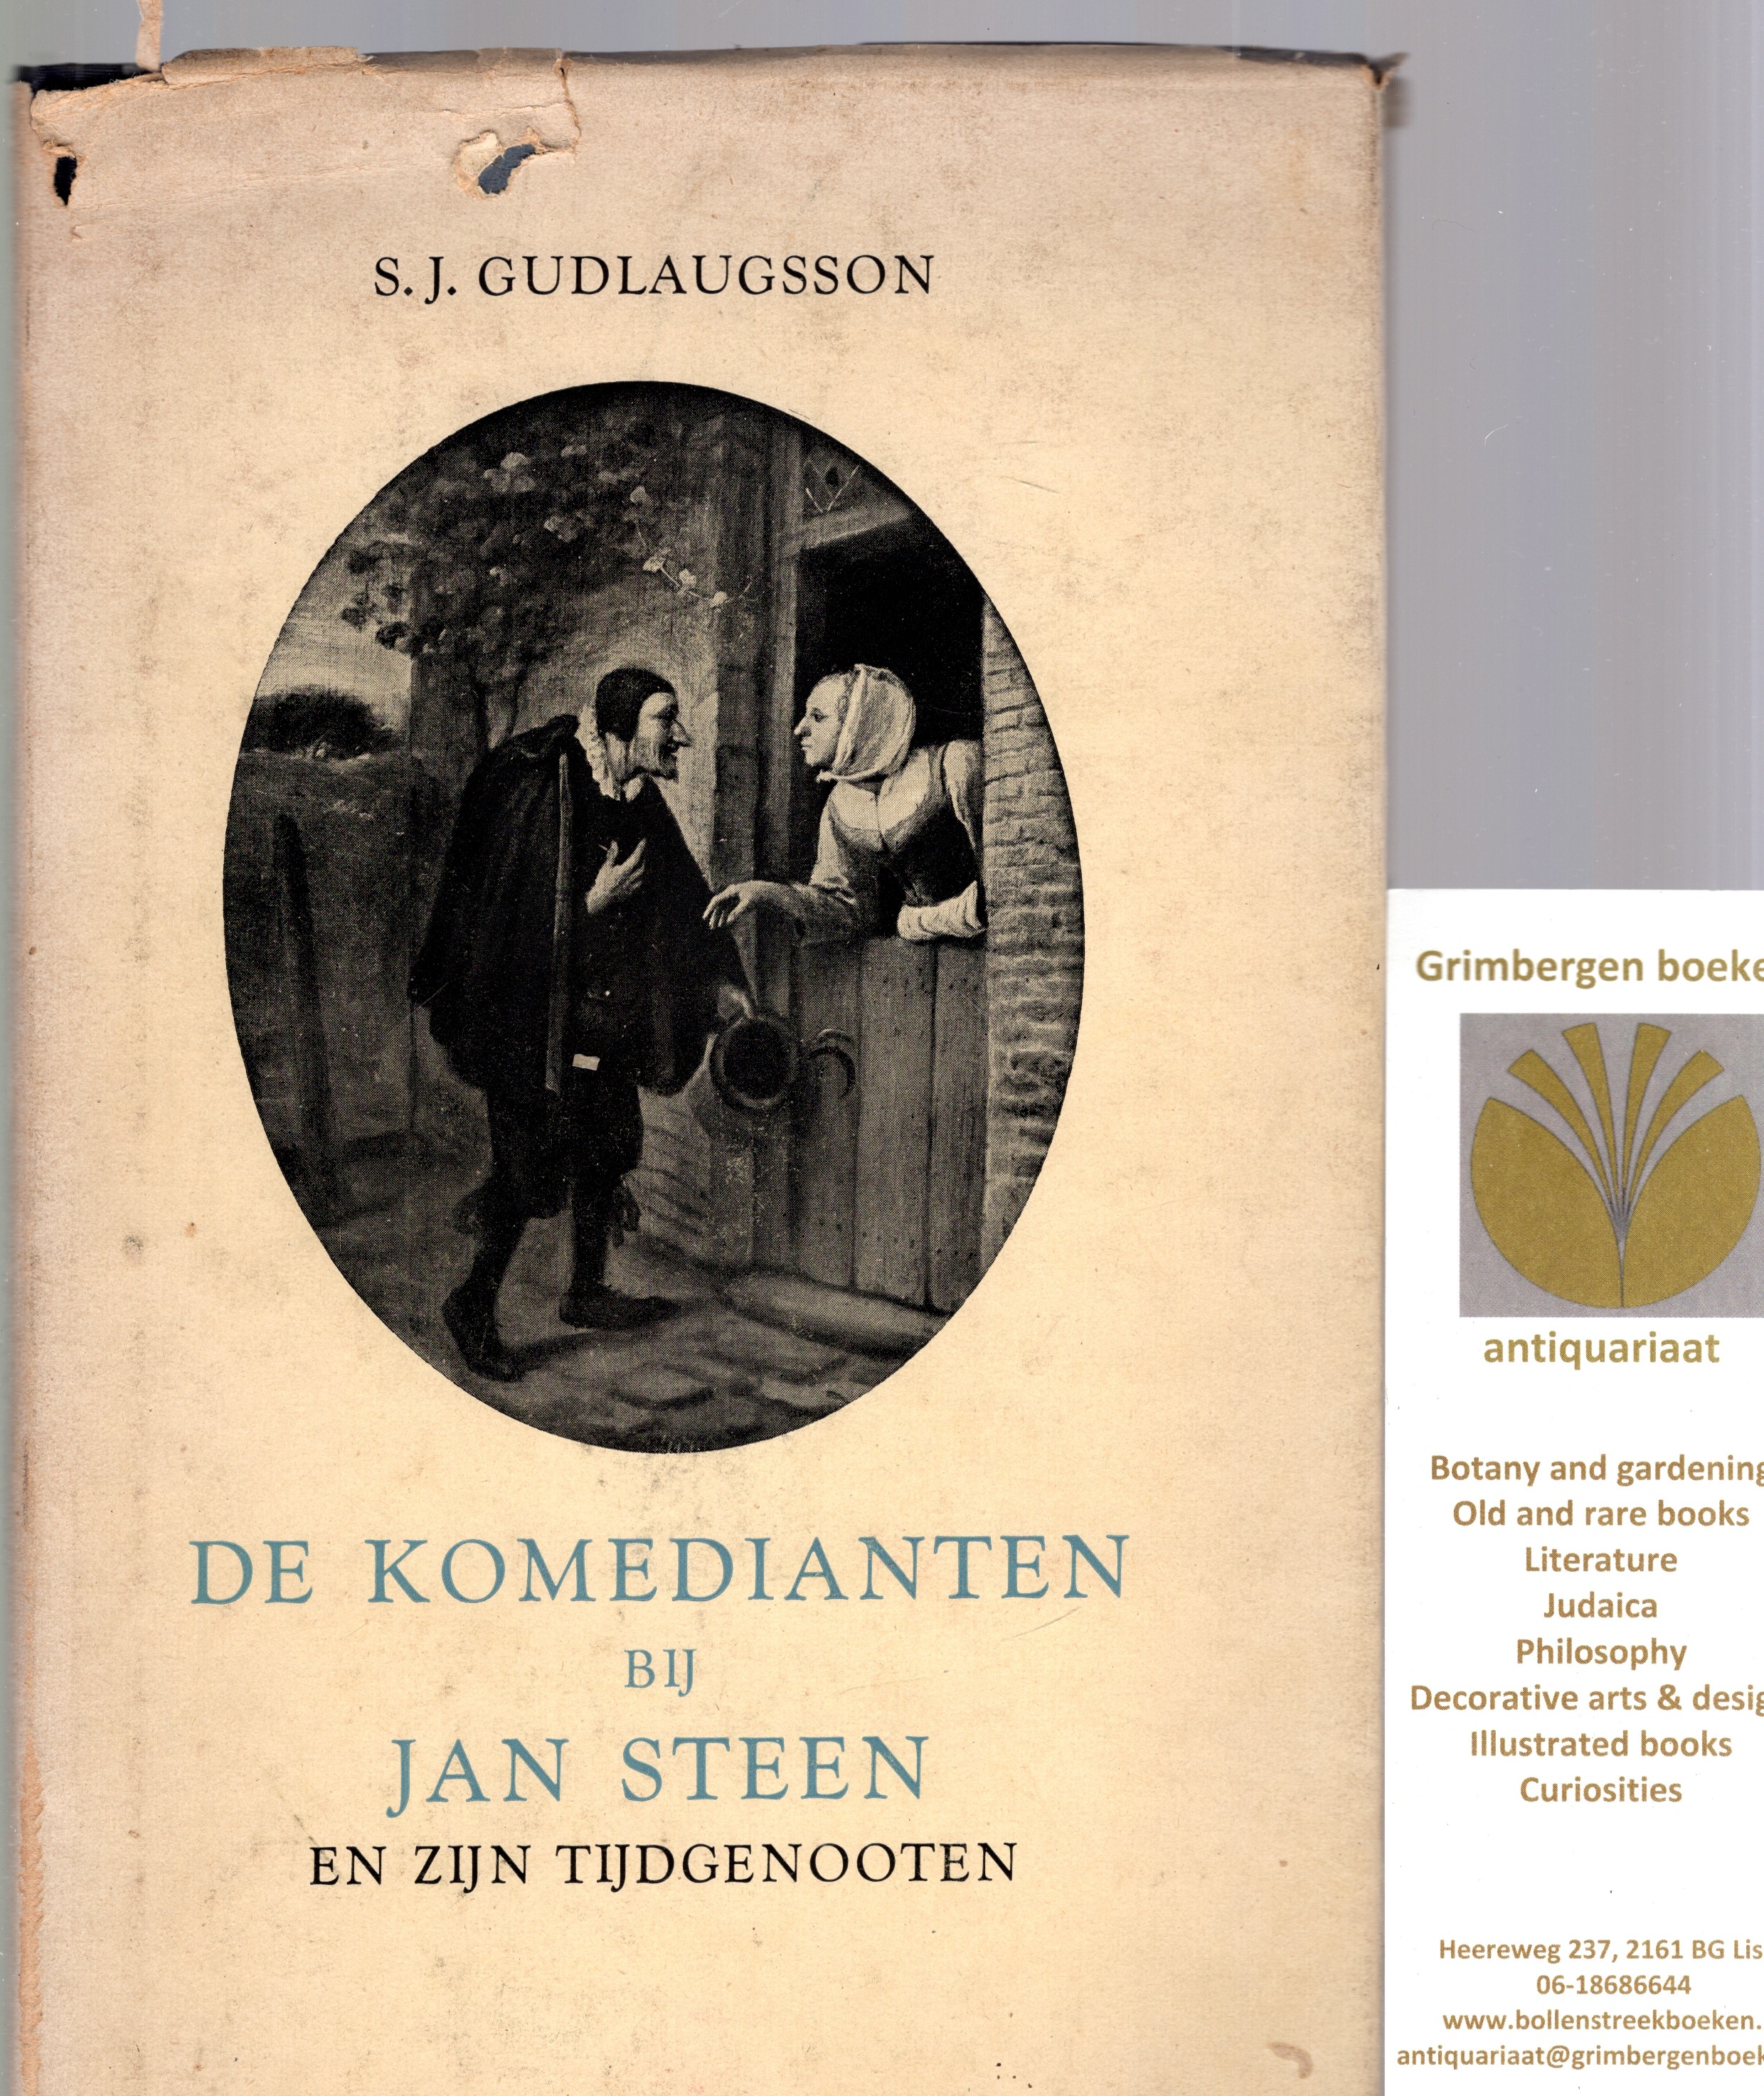 Gudlaugsson, S. J. - De komedianten bij Jan Steen en zijn tijdgenooten